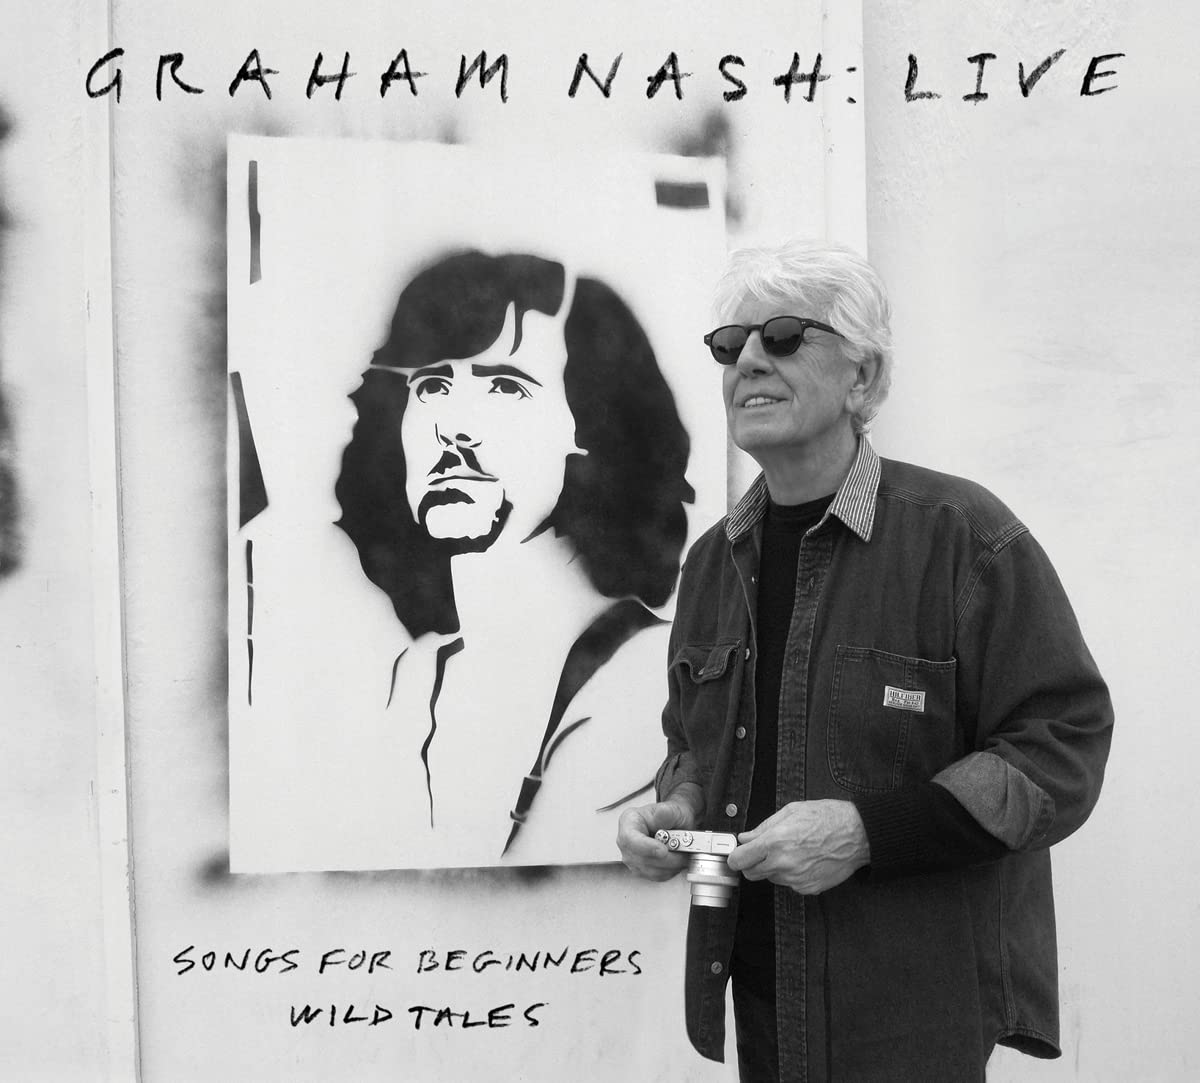 Graham Nash Live